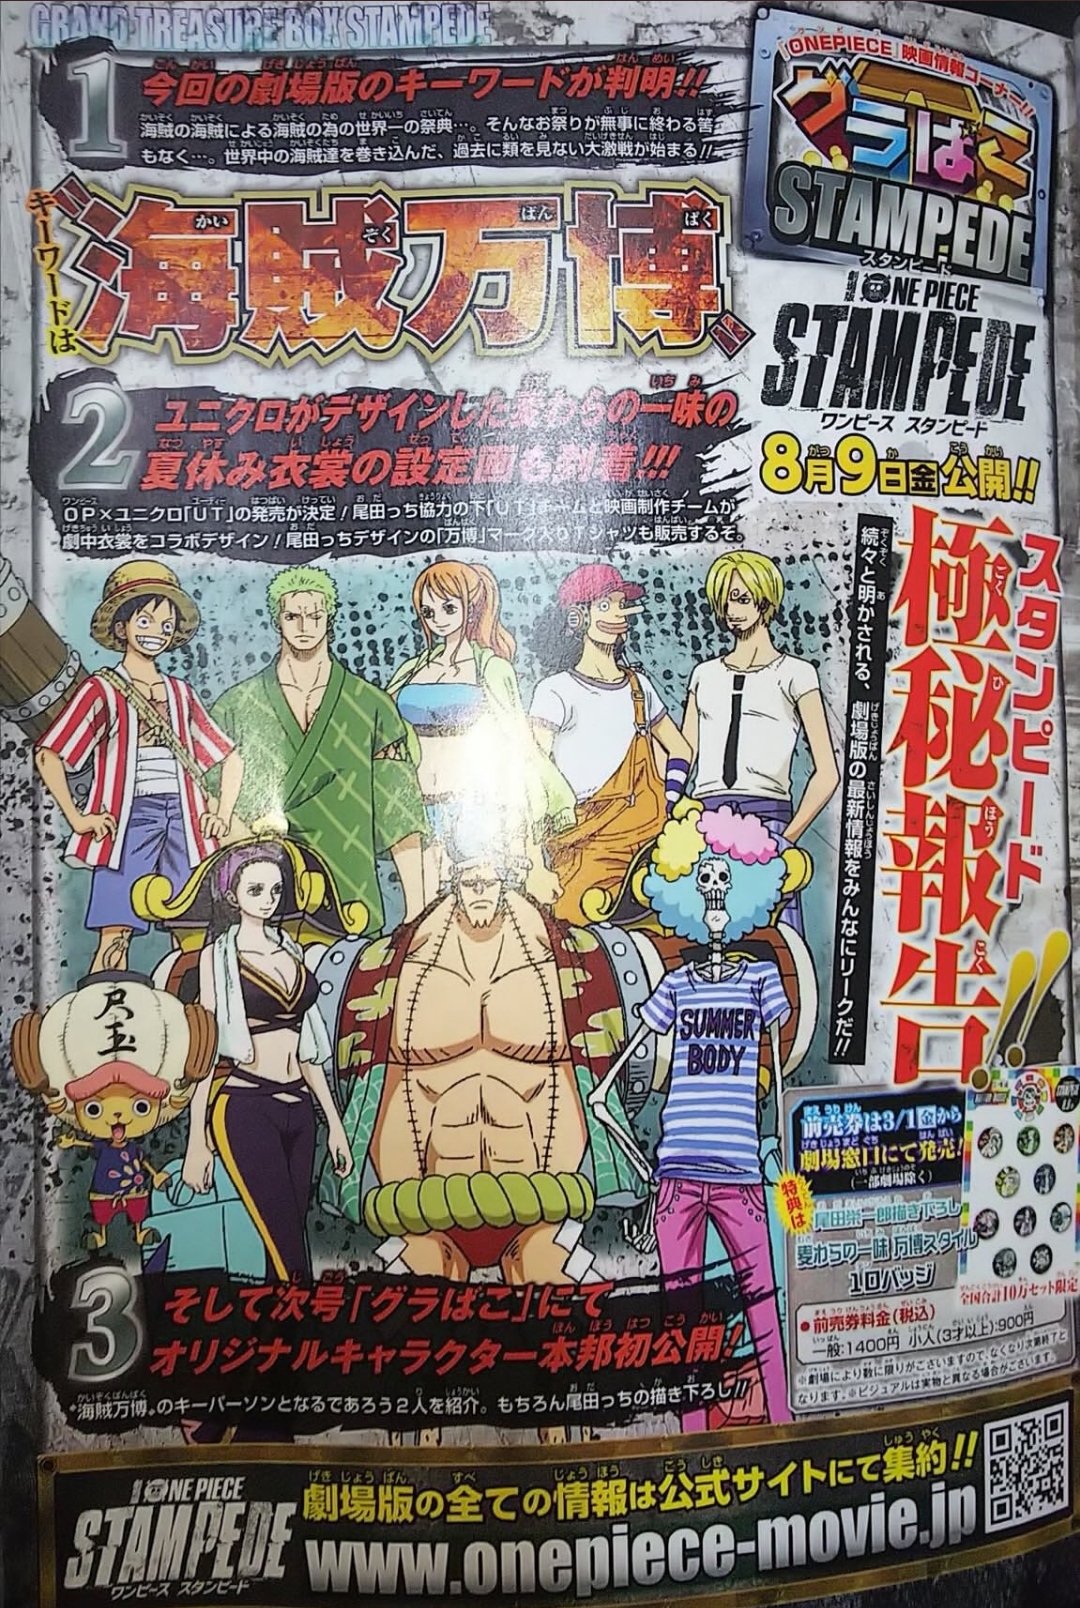 Trailer de One Piece: Stampede apresenta dois novos personagens